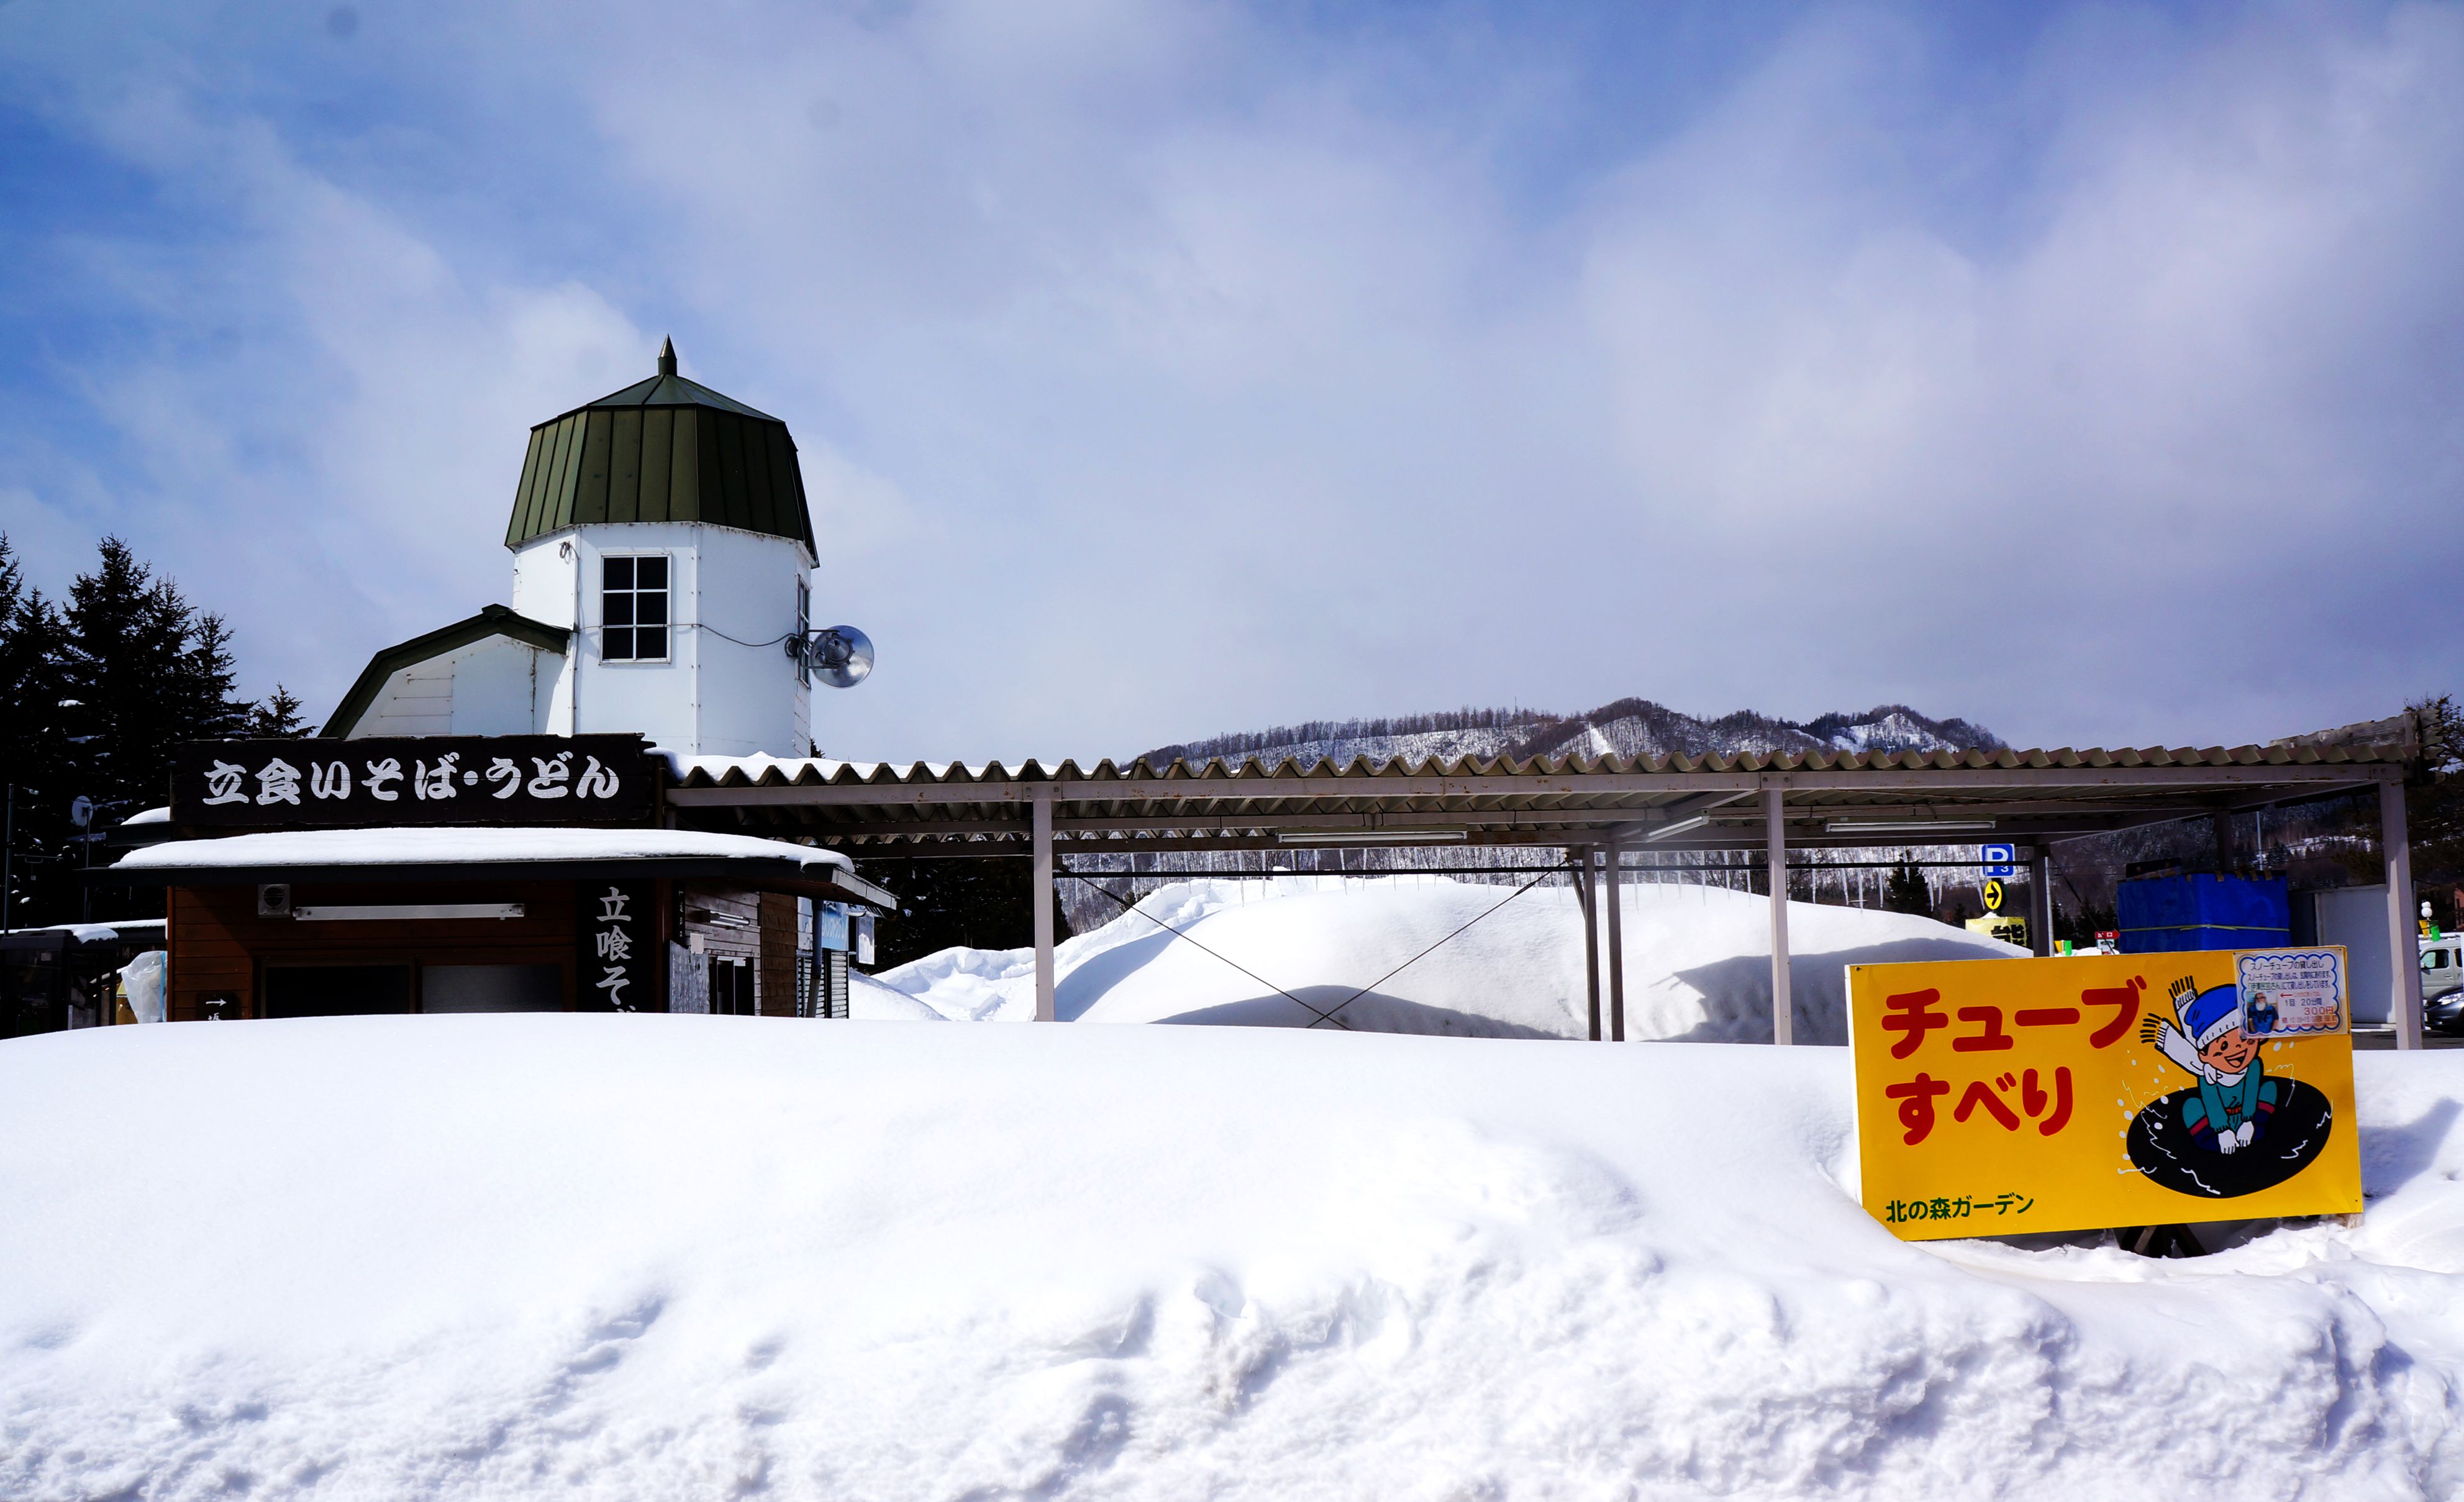 去看雪 东北贵还是日本北海道贵?